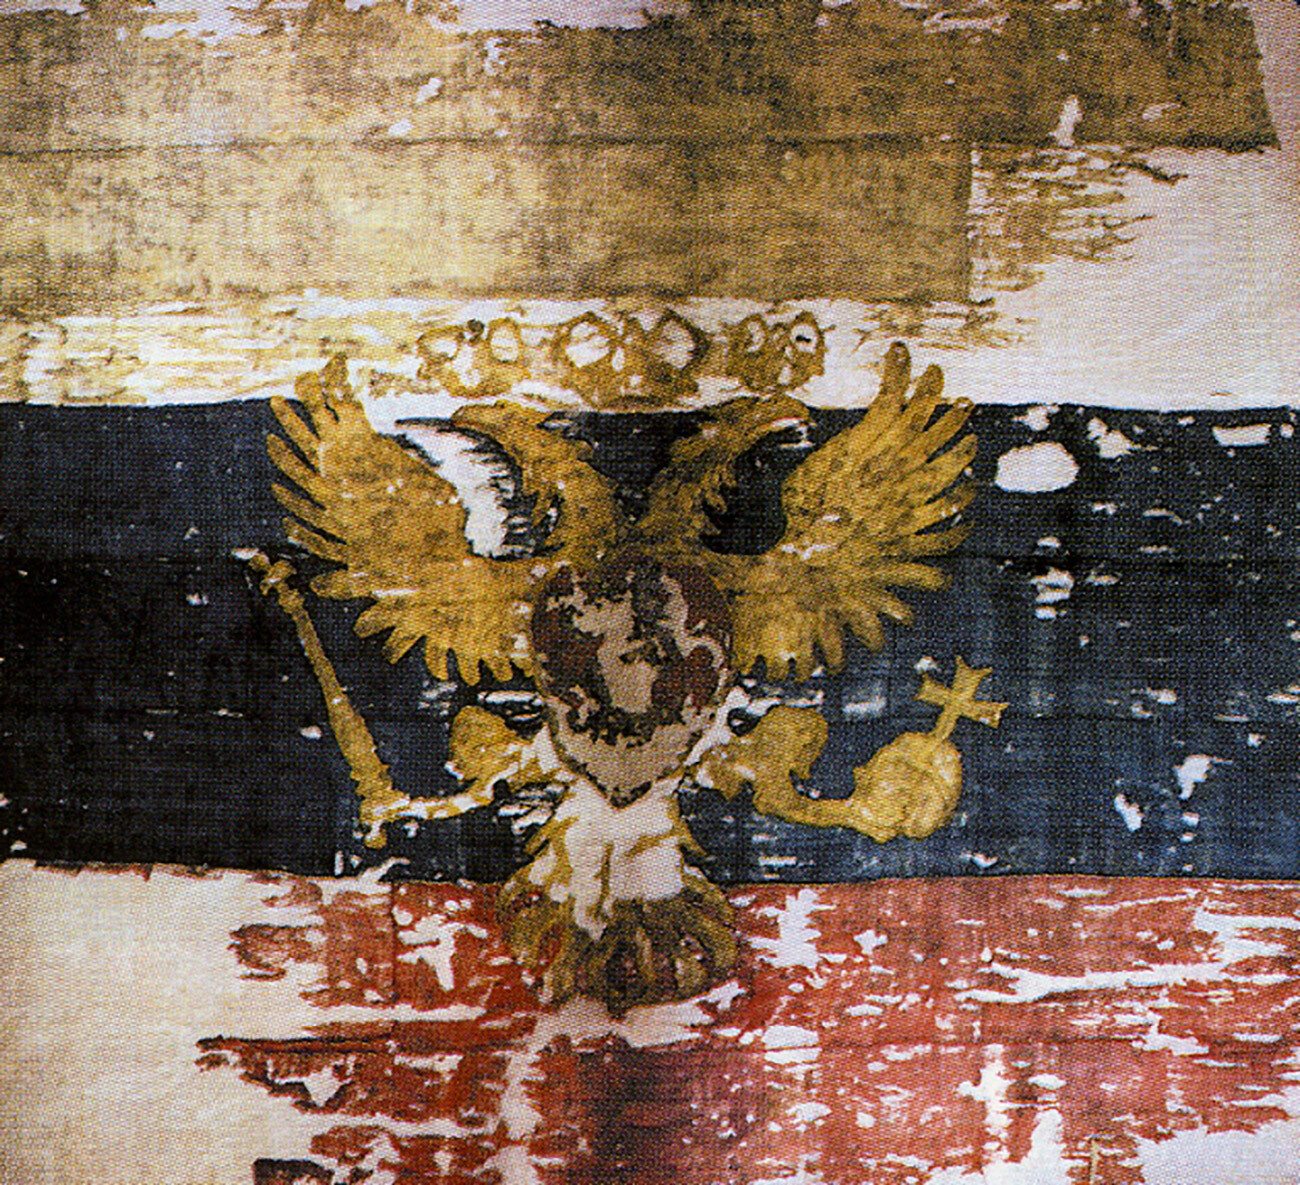 Самый первый из сохранившихся триколоров - Флаг царя Московского 1693 года